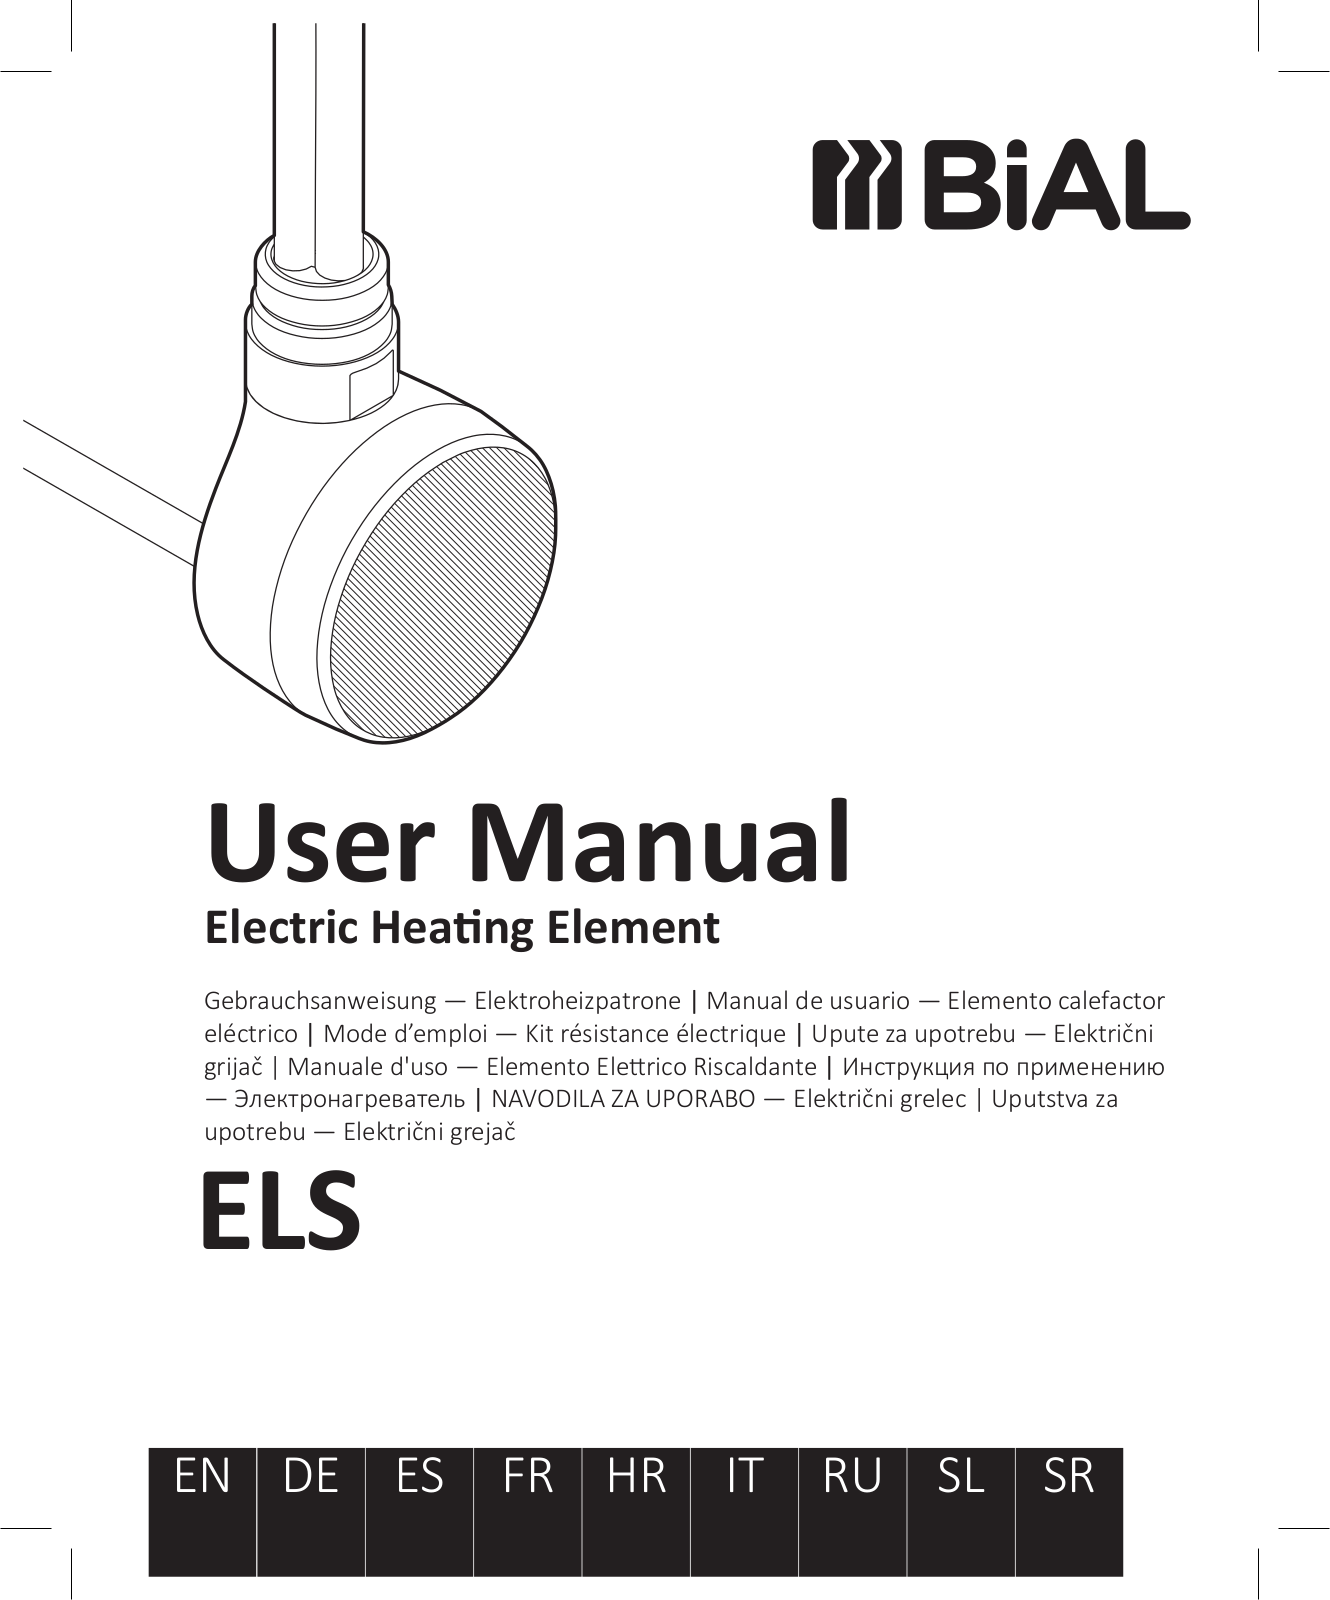 BiAL ELS User Manual